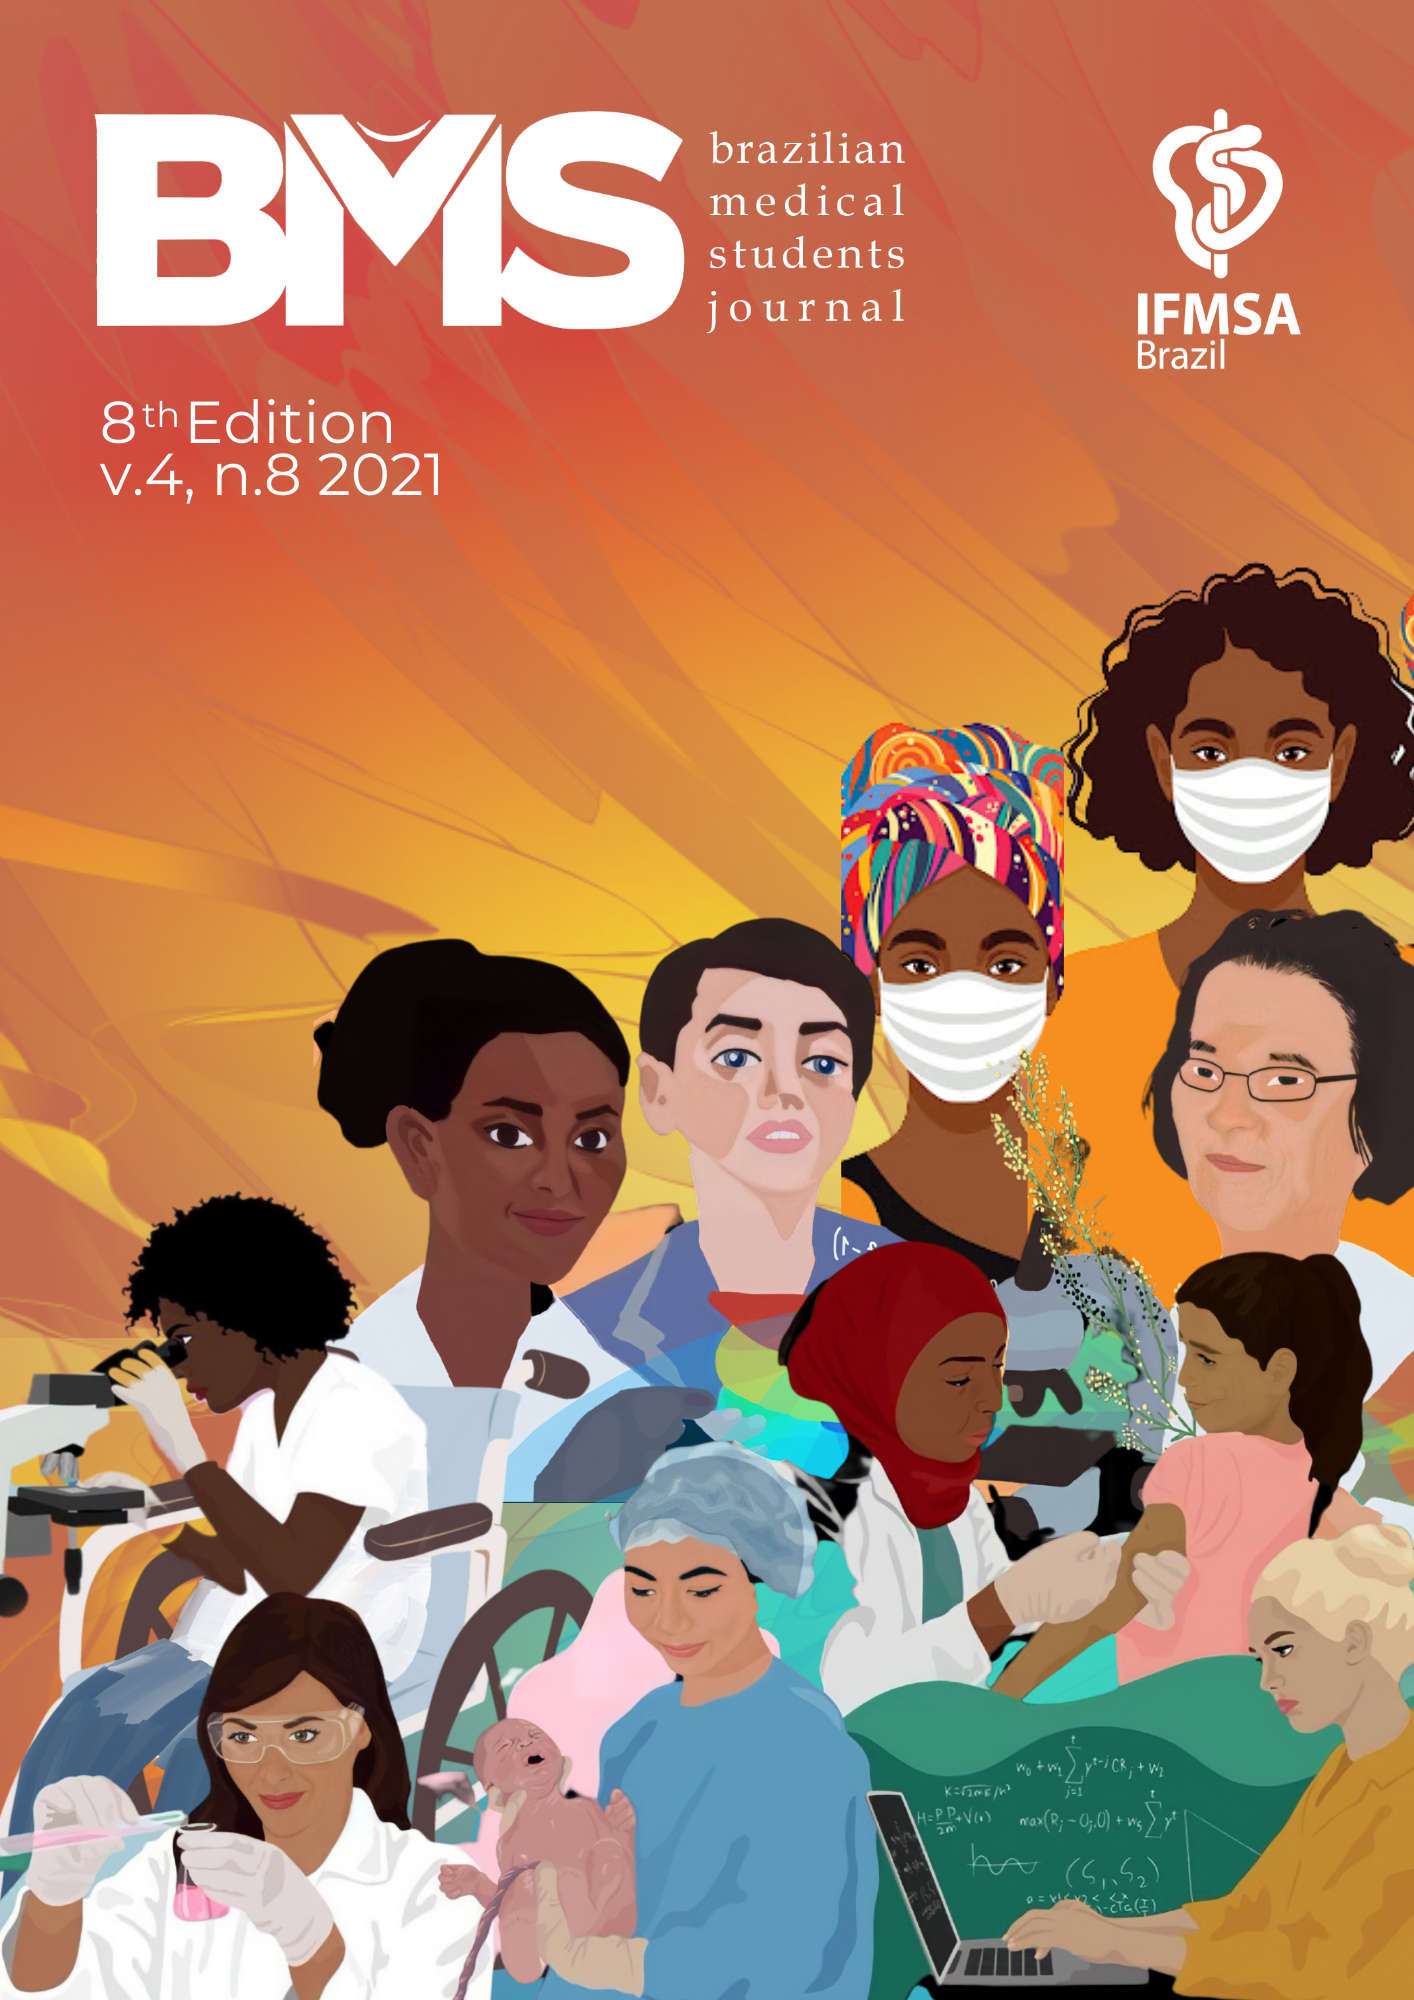 A foto mostra a capa da Brazilian Medical Students, volume 6, edição 9, com figuras de várias mulheres de culturas e profissões diferentes, como médicas, cientistas e professoras. Há um fundo laranja e a logo da IFMSA Brazil.